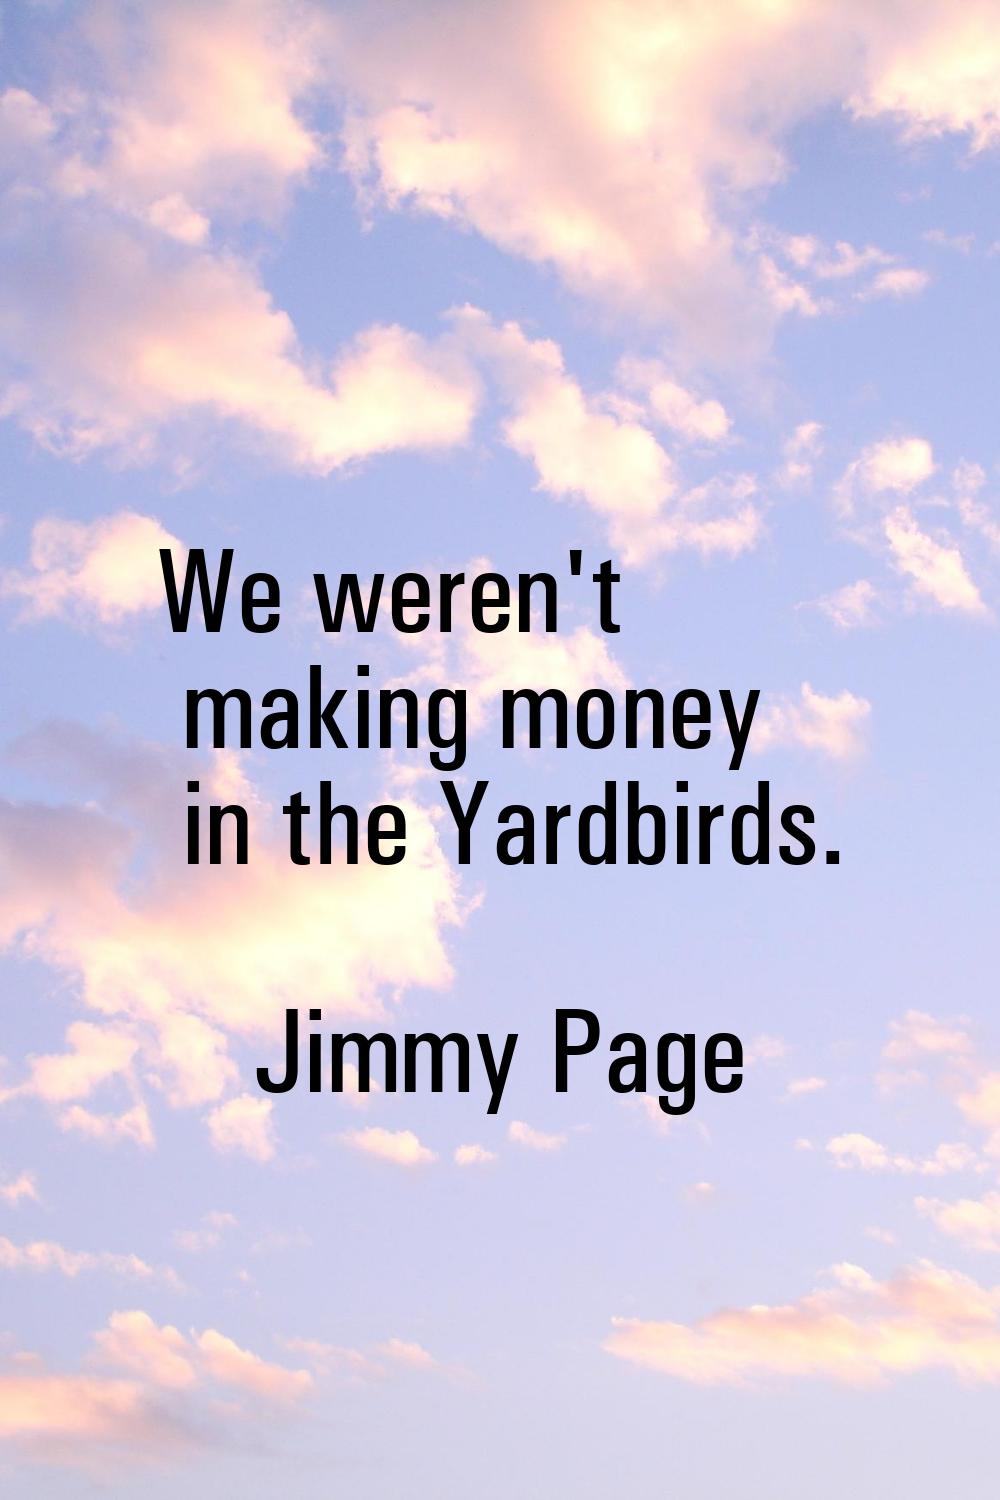 We weren't making money in the Yardbirds.